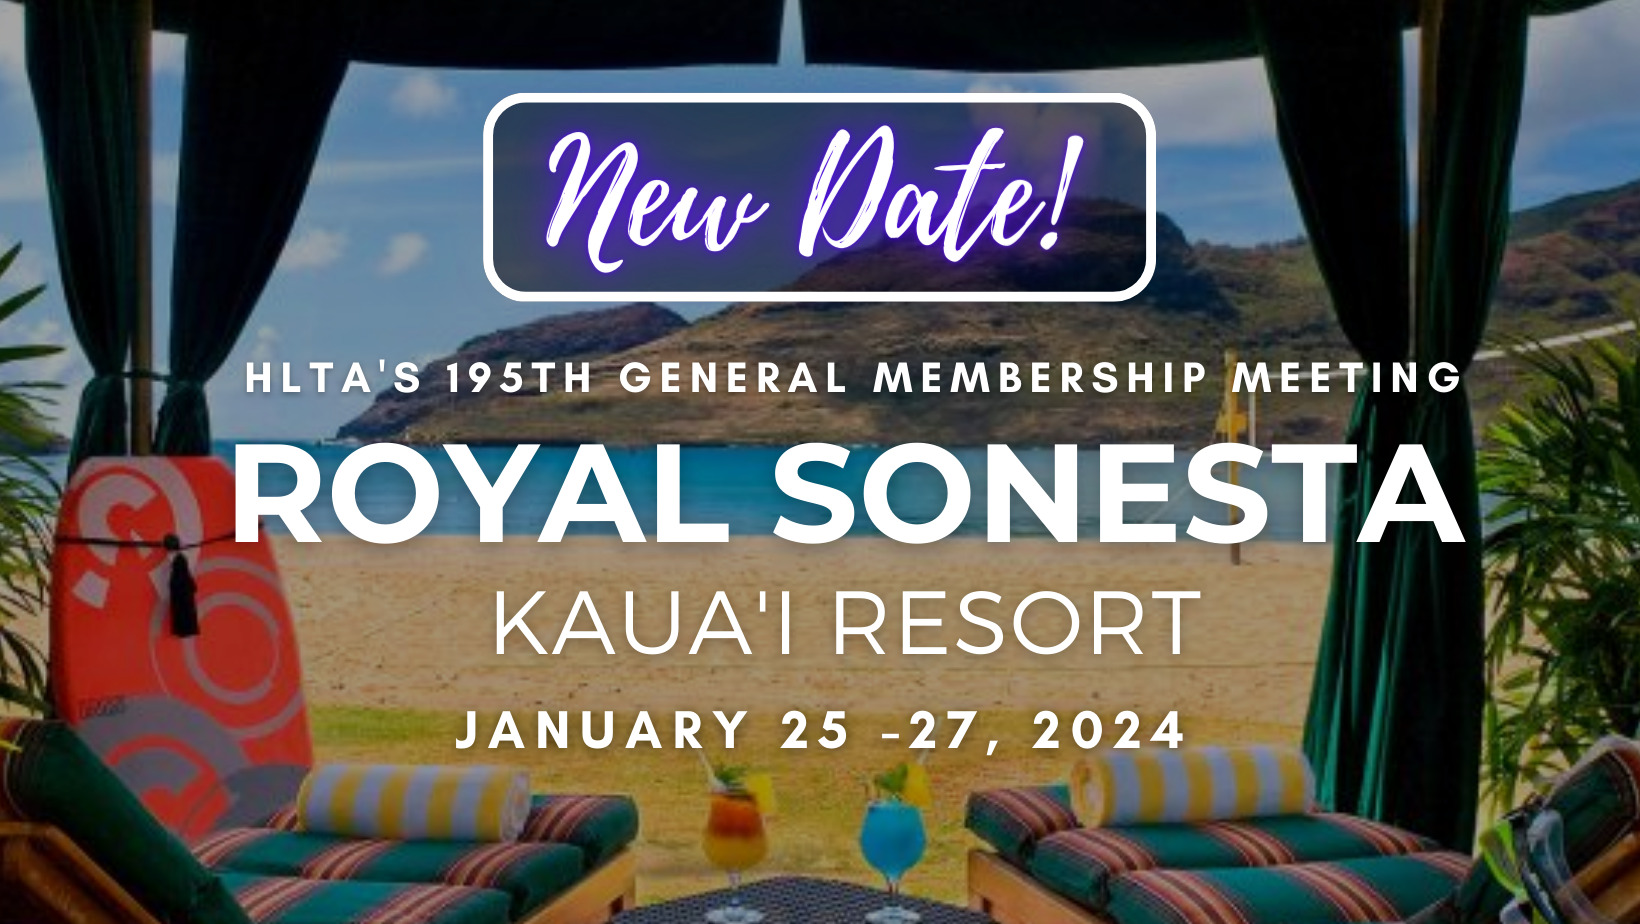 General Membership Meeting Royal Sonesta